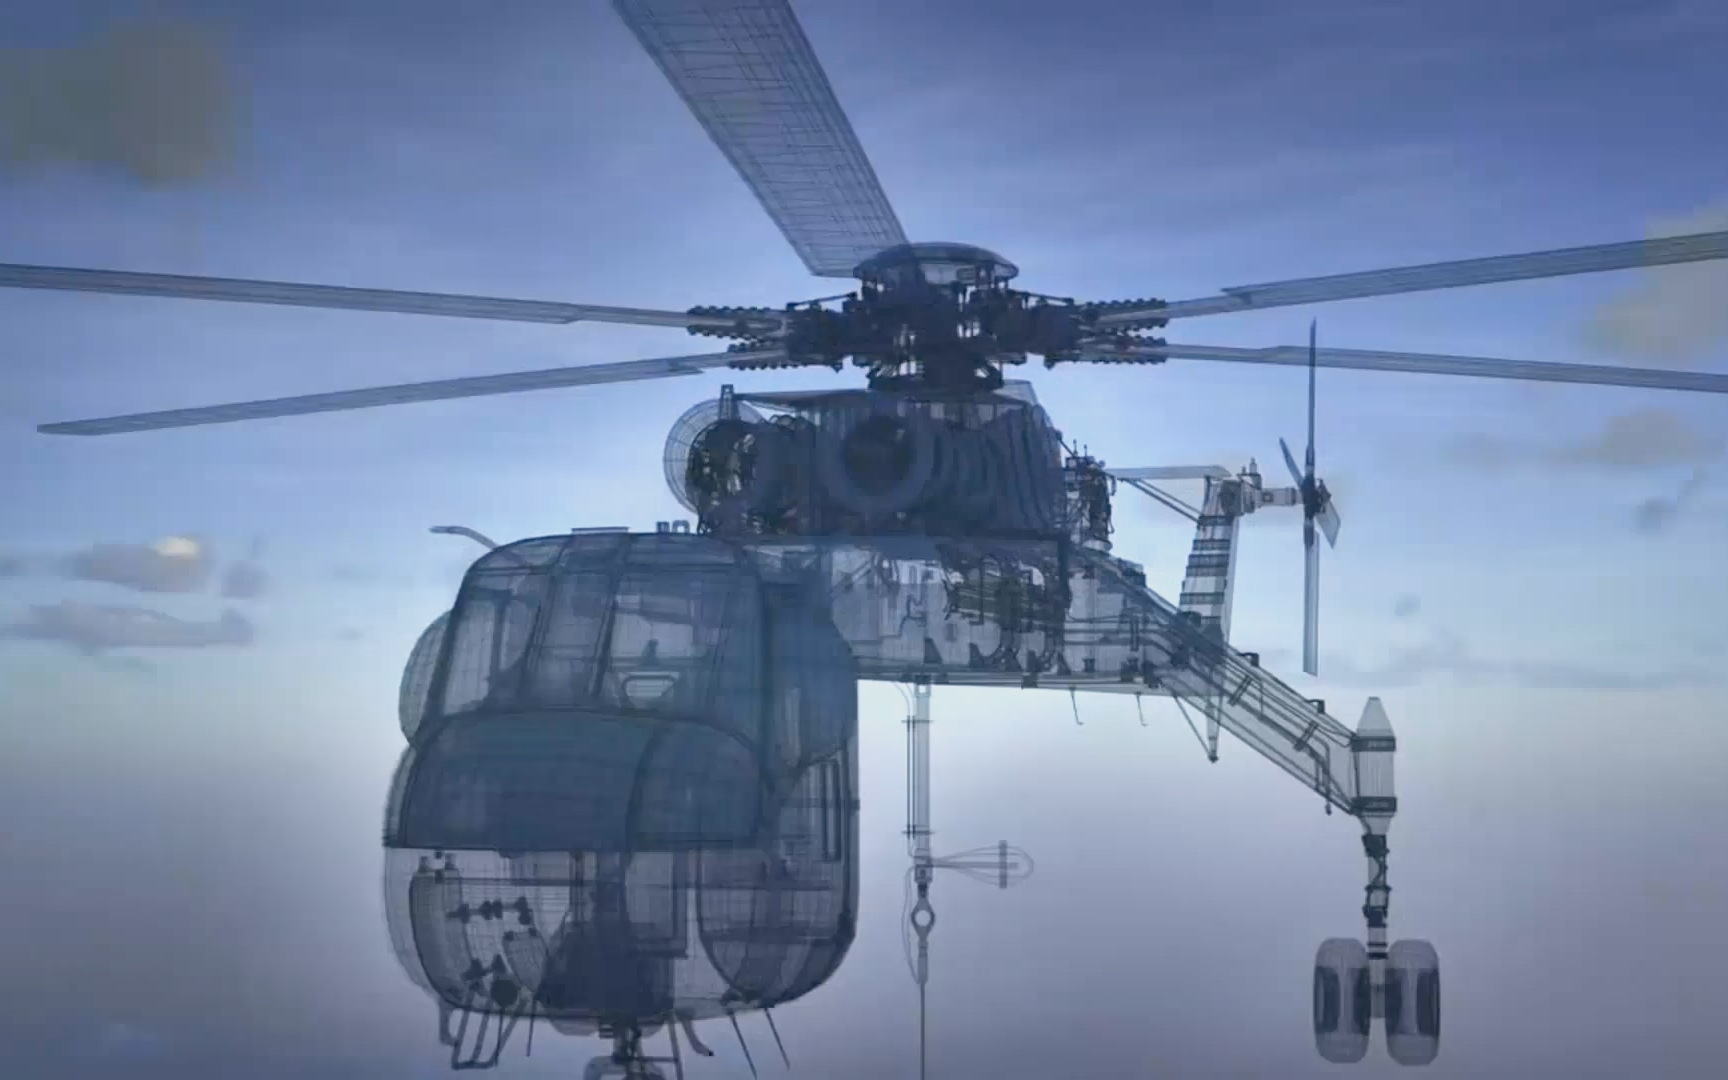 【纪录片】极限维修 直升机采伐【1080p】【双语特效字幕】【纪录片之家科技控】